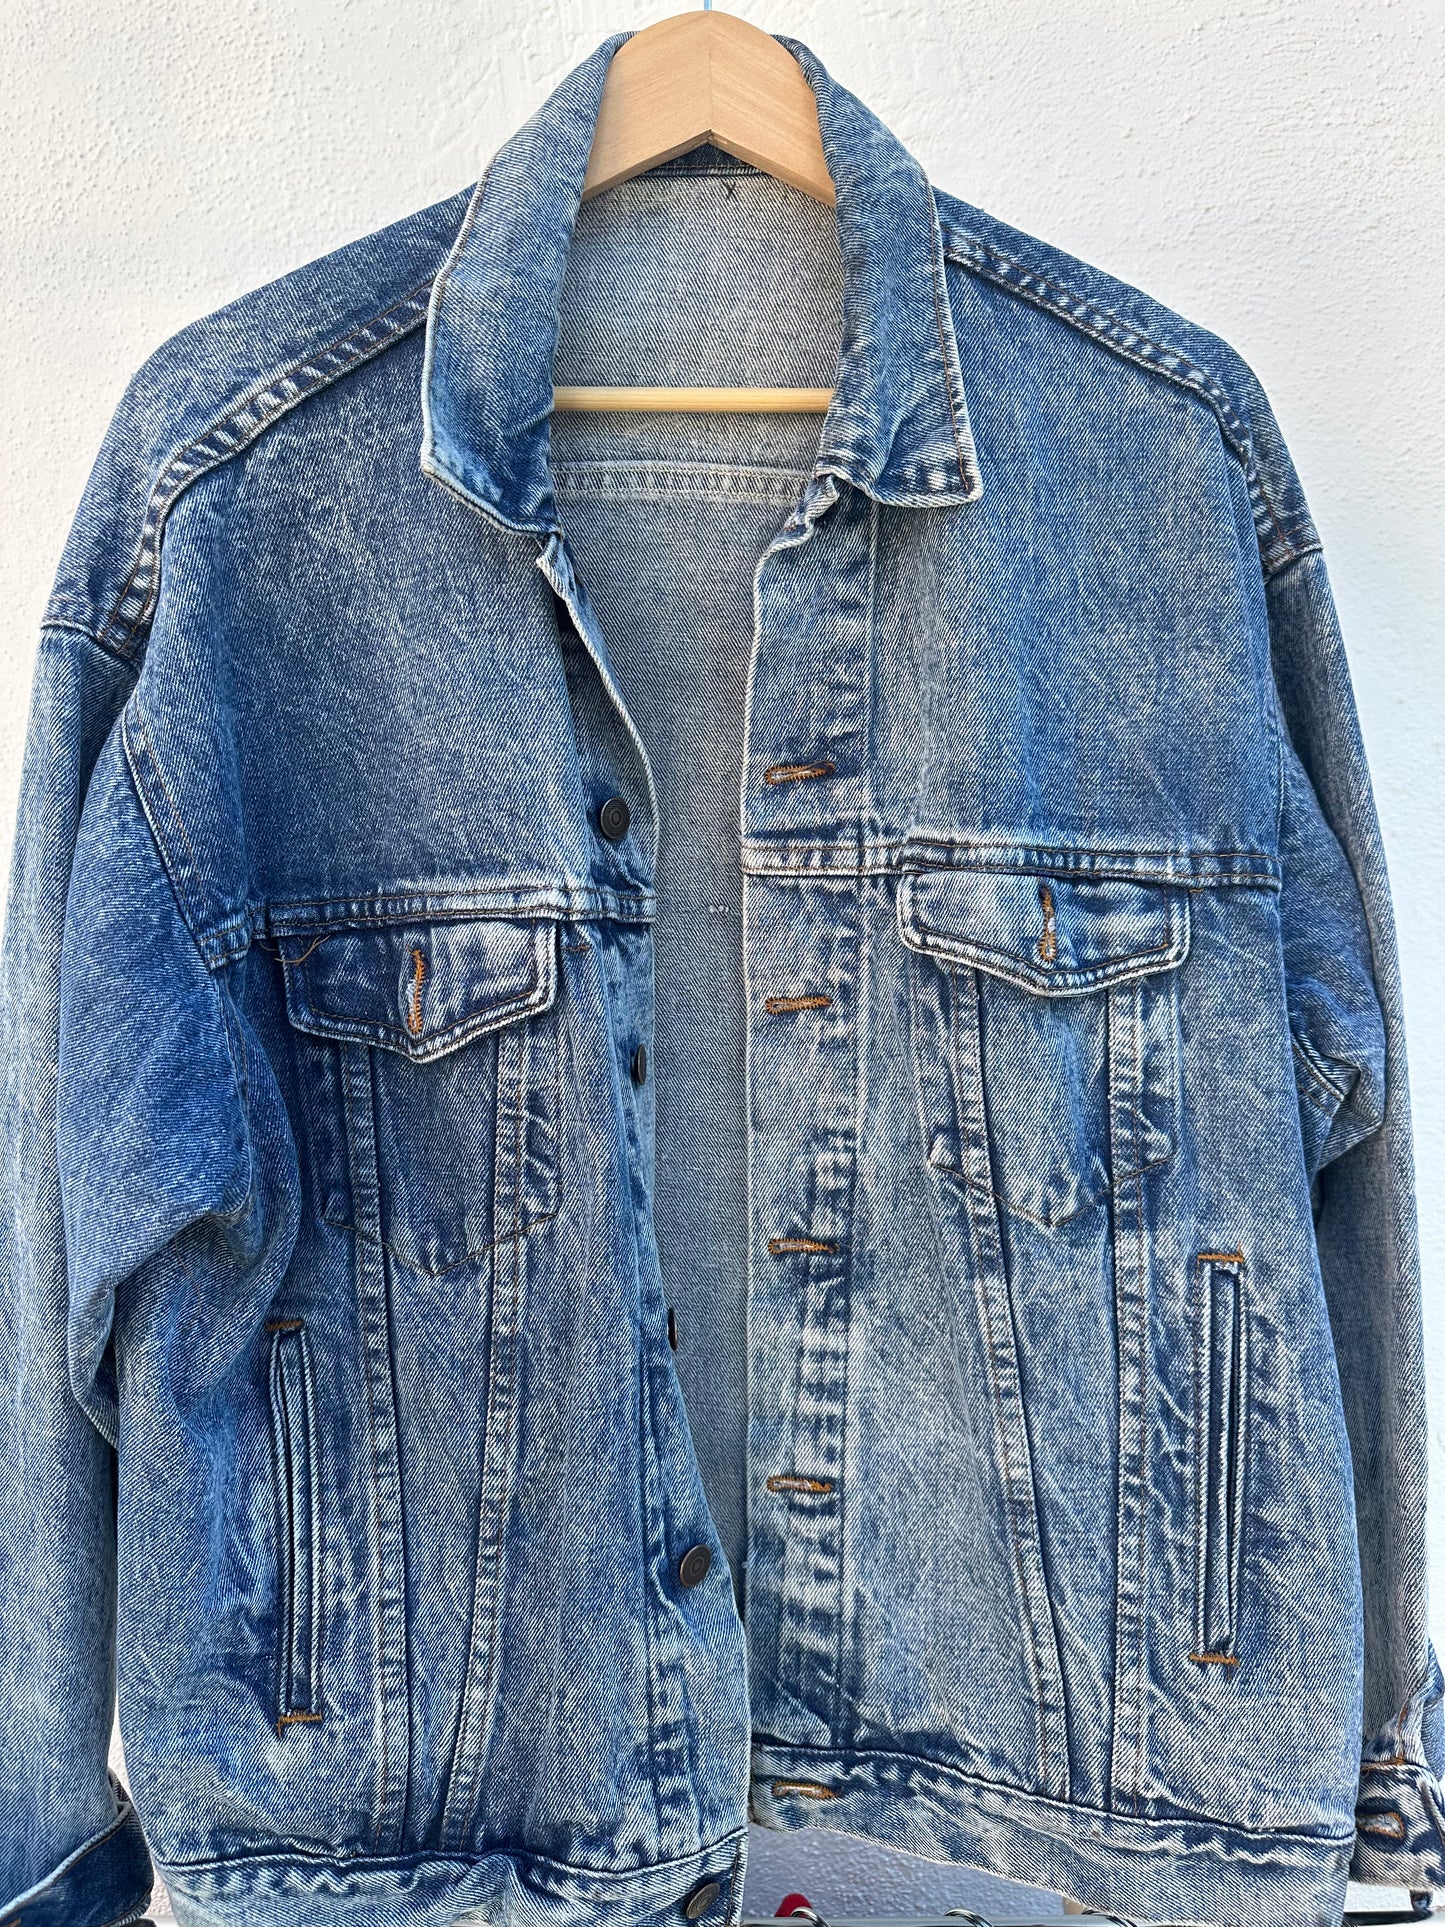 ARX - Vintage Denim Jacket (Acid Wash)